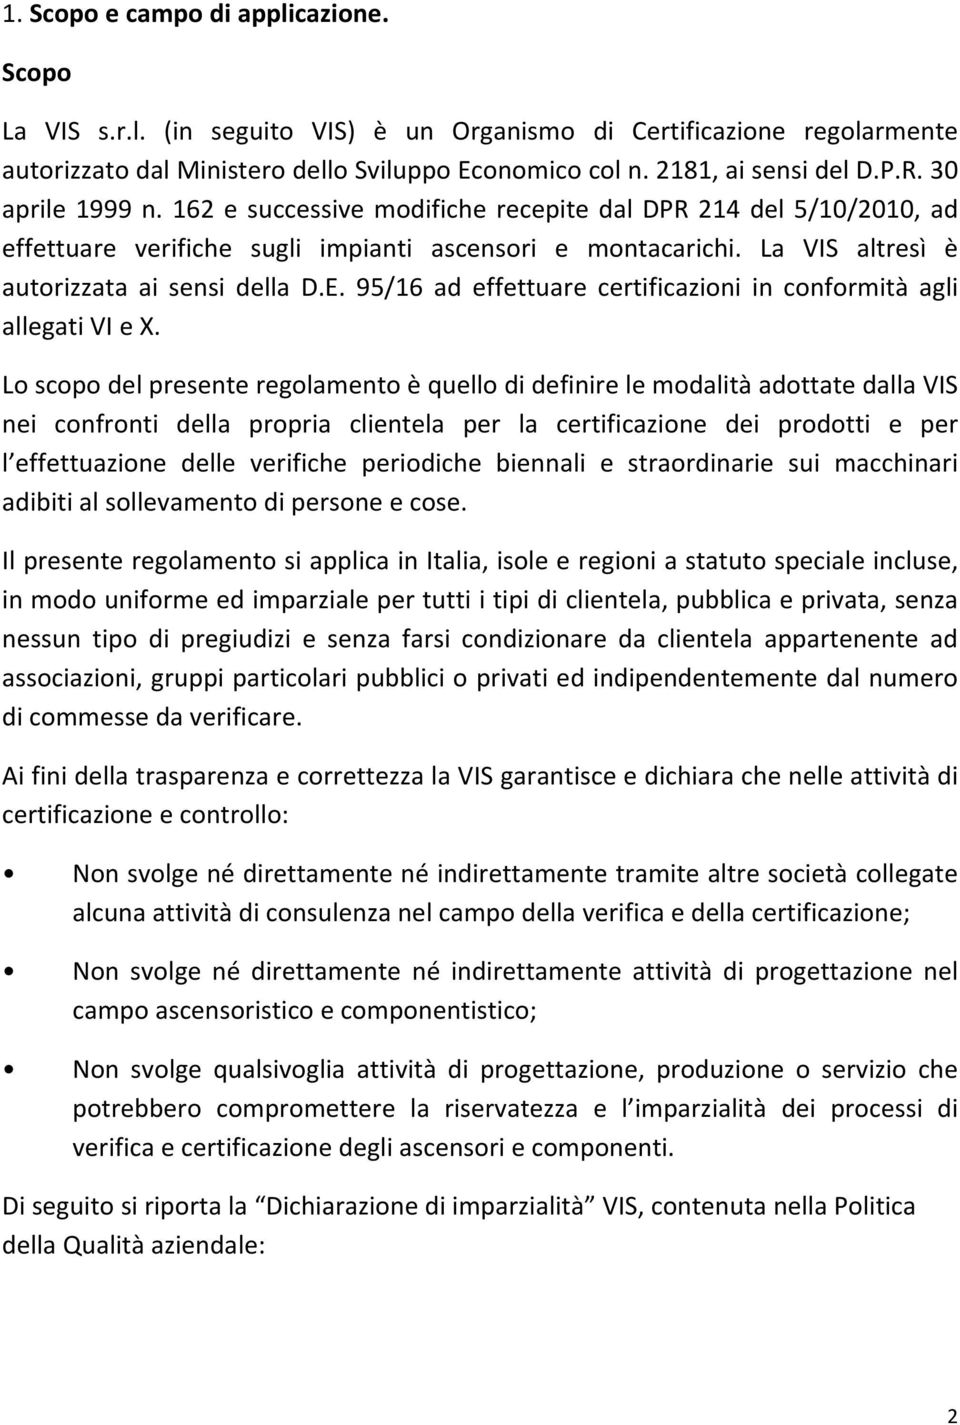 95/16 ad effettuare certificazioni in conformità agli allegati VI e X.